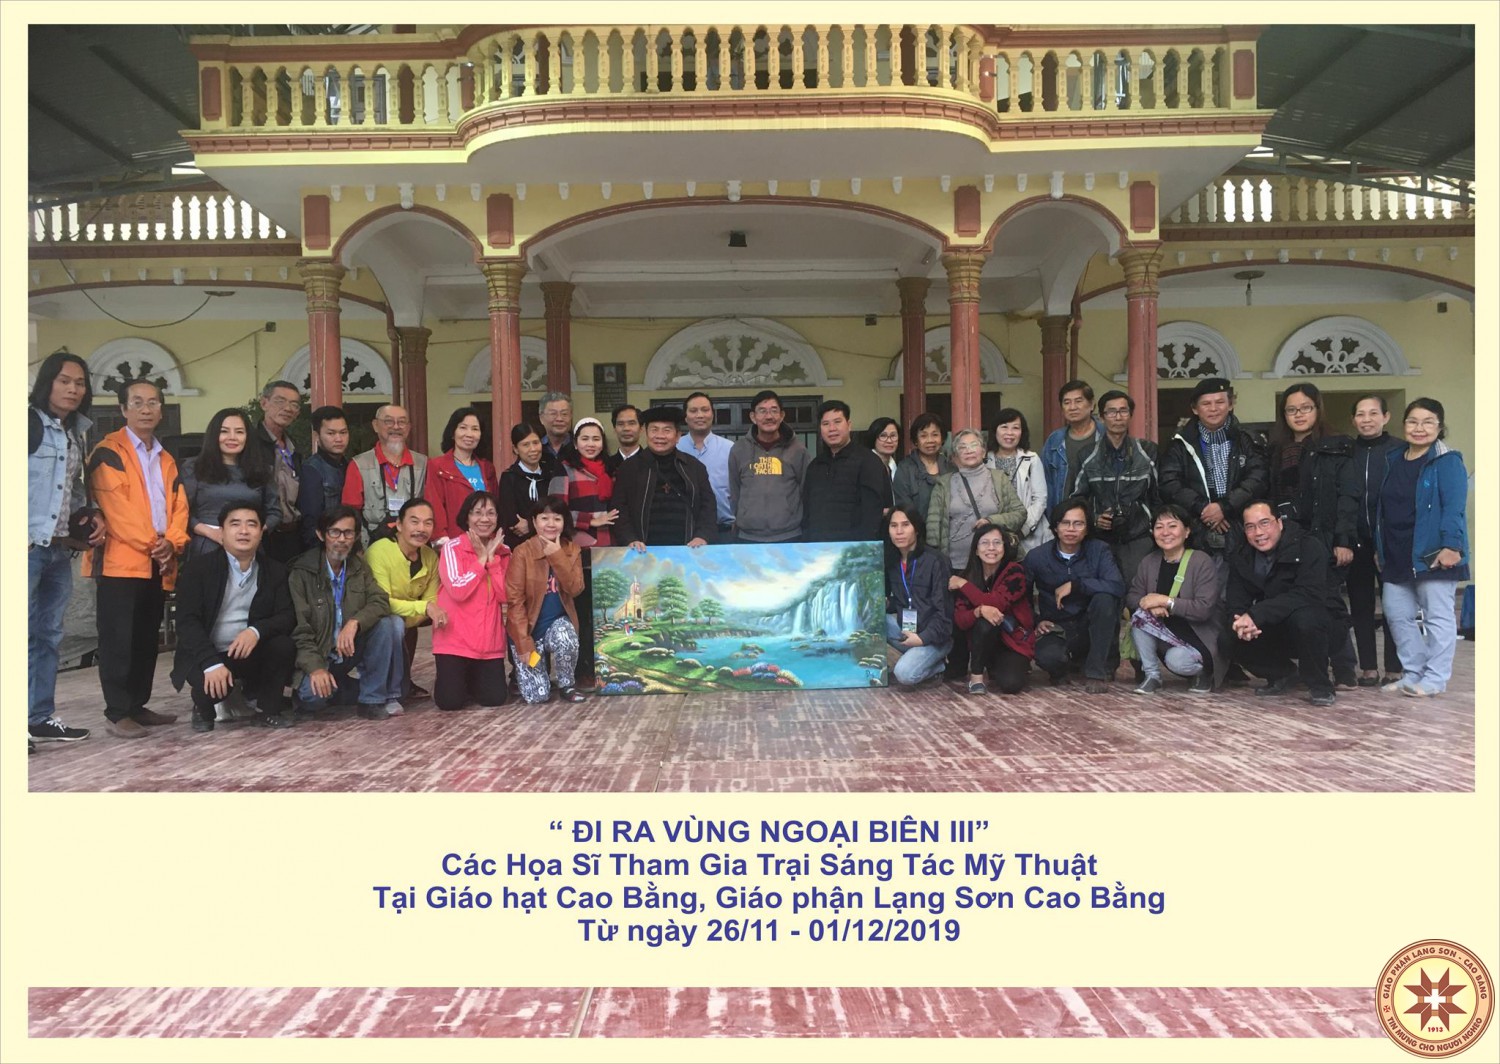 Trại sáng tác mỹ thuật “Đi Ra Vùng Ngoại Biên III” tại Giáo phận Lạng Sơn Cao Bằng.